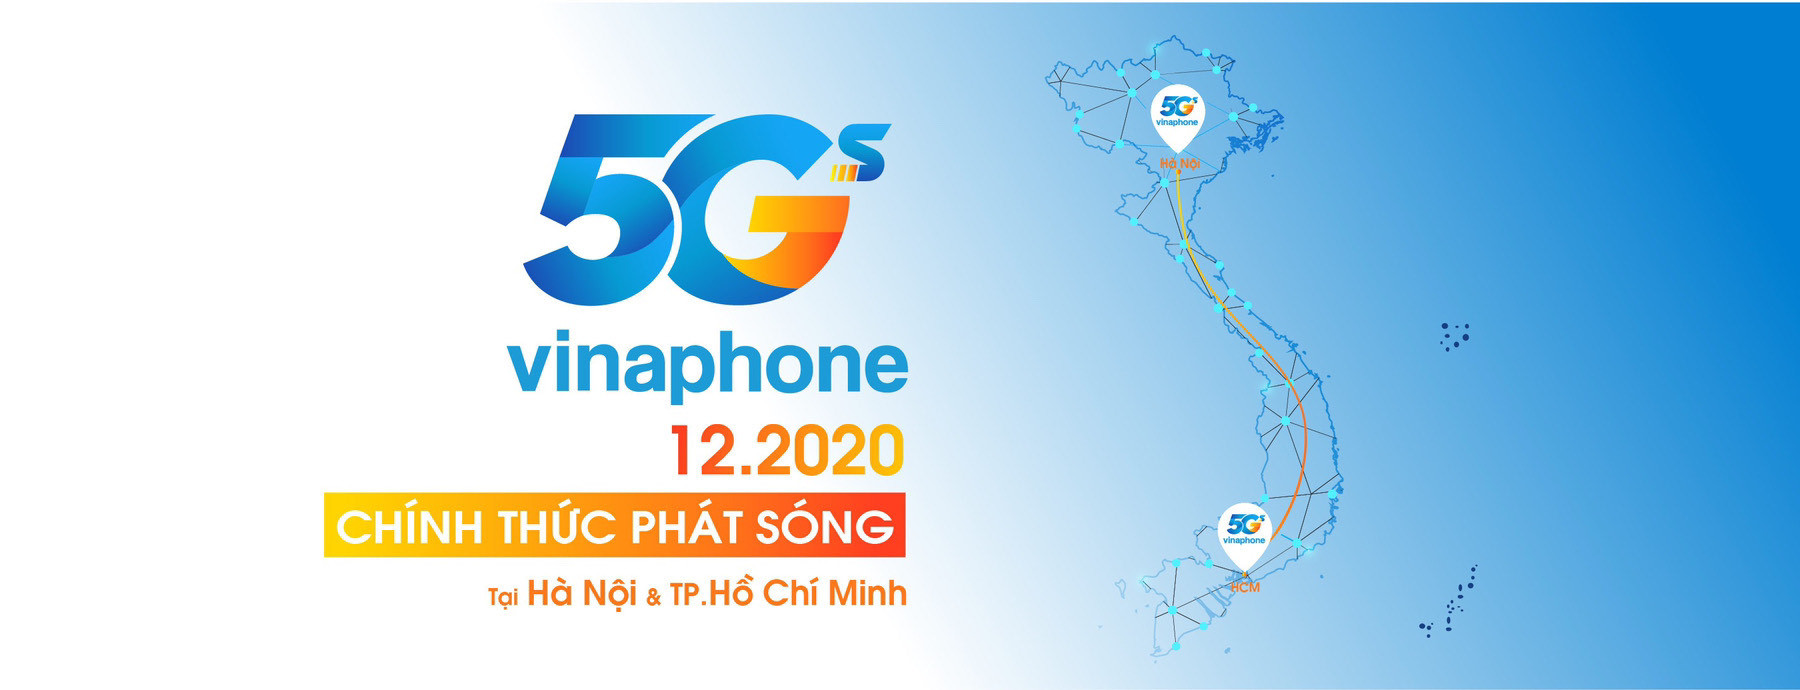 Vinaphone chính thức phát sóng 5G tại Hà Nội và TP. Hồ Chí Minh vào tháng 12/2020 - Ảnh 2.